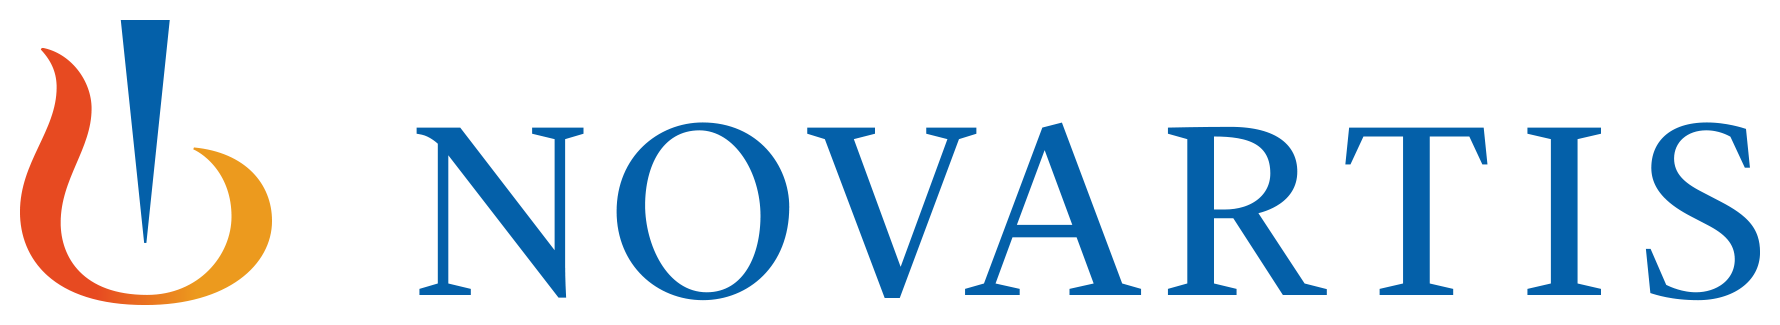 logo vystavovatele Novartis